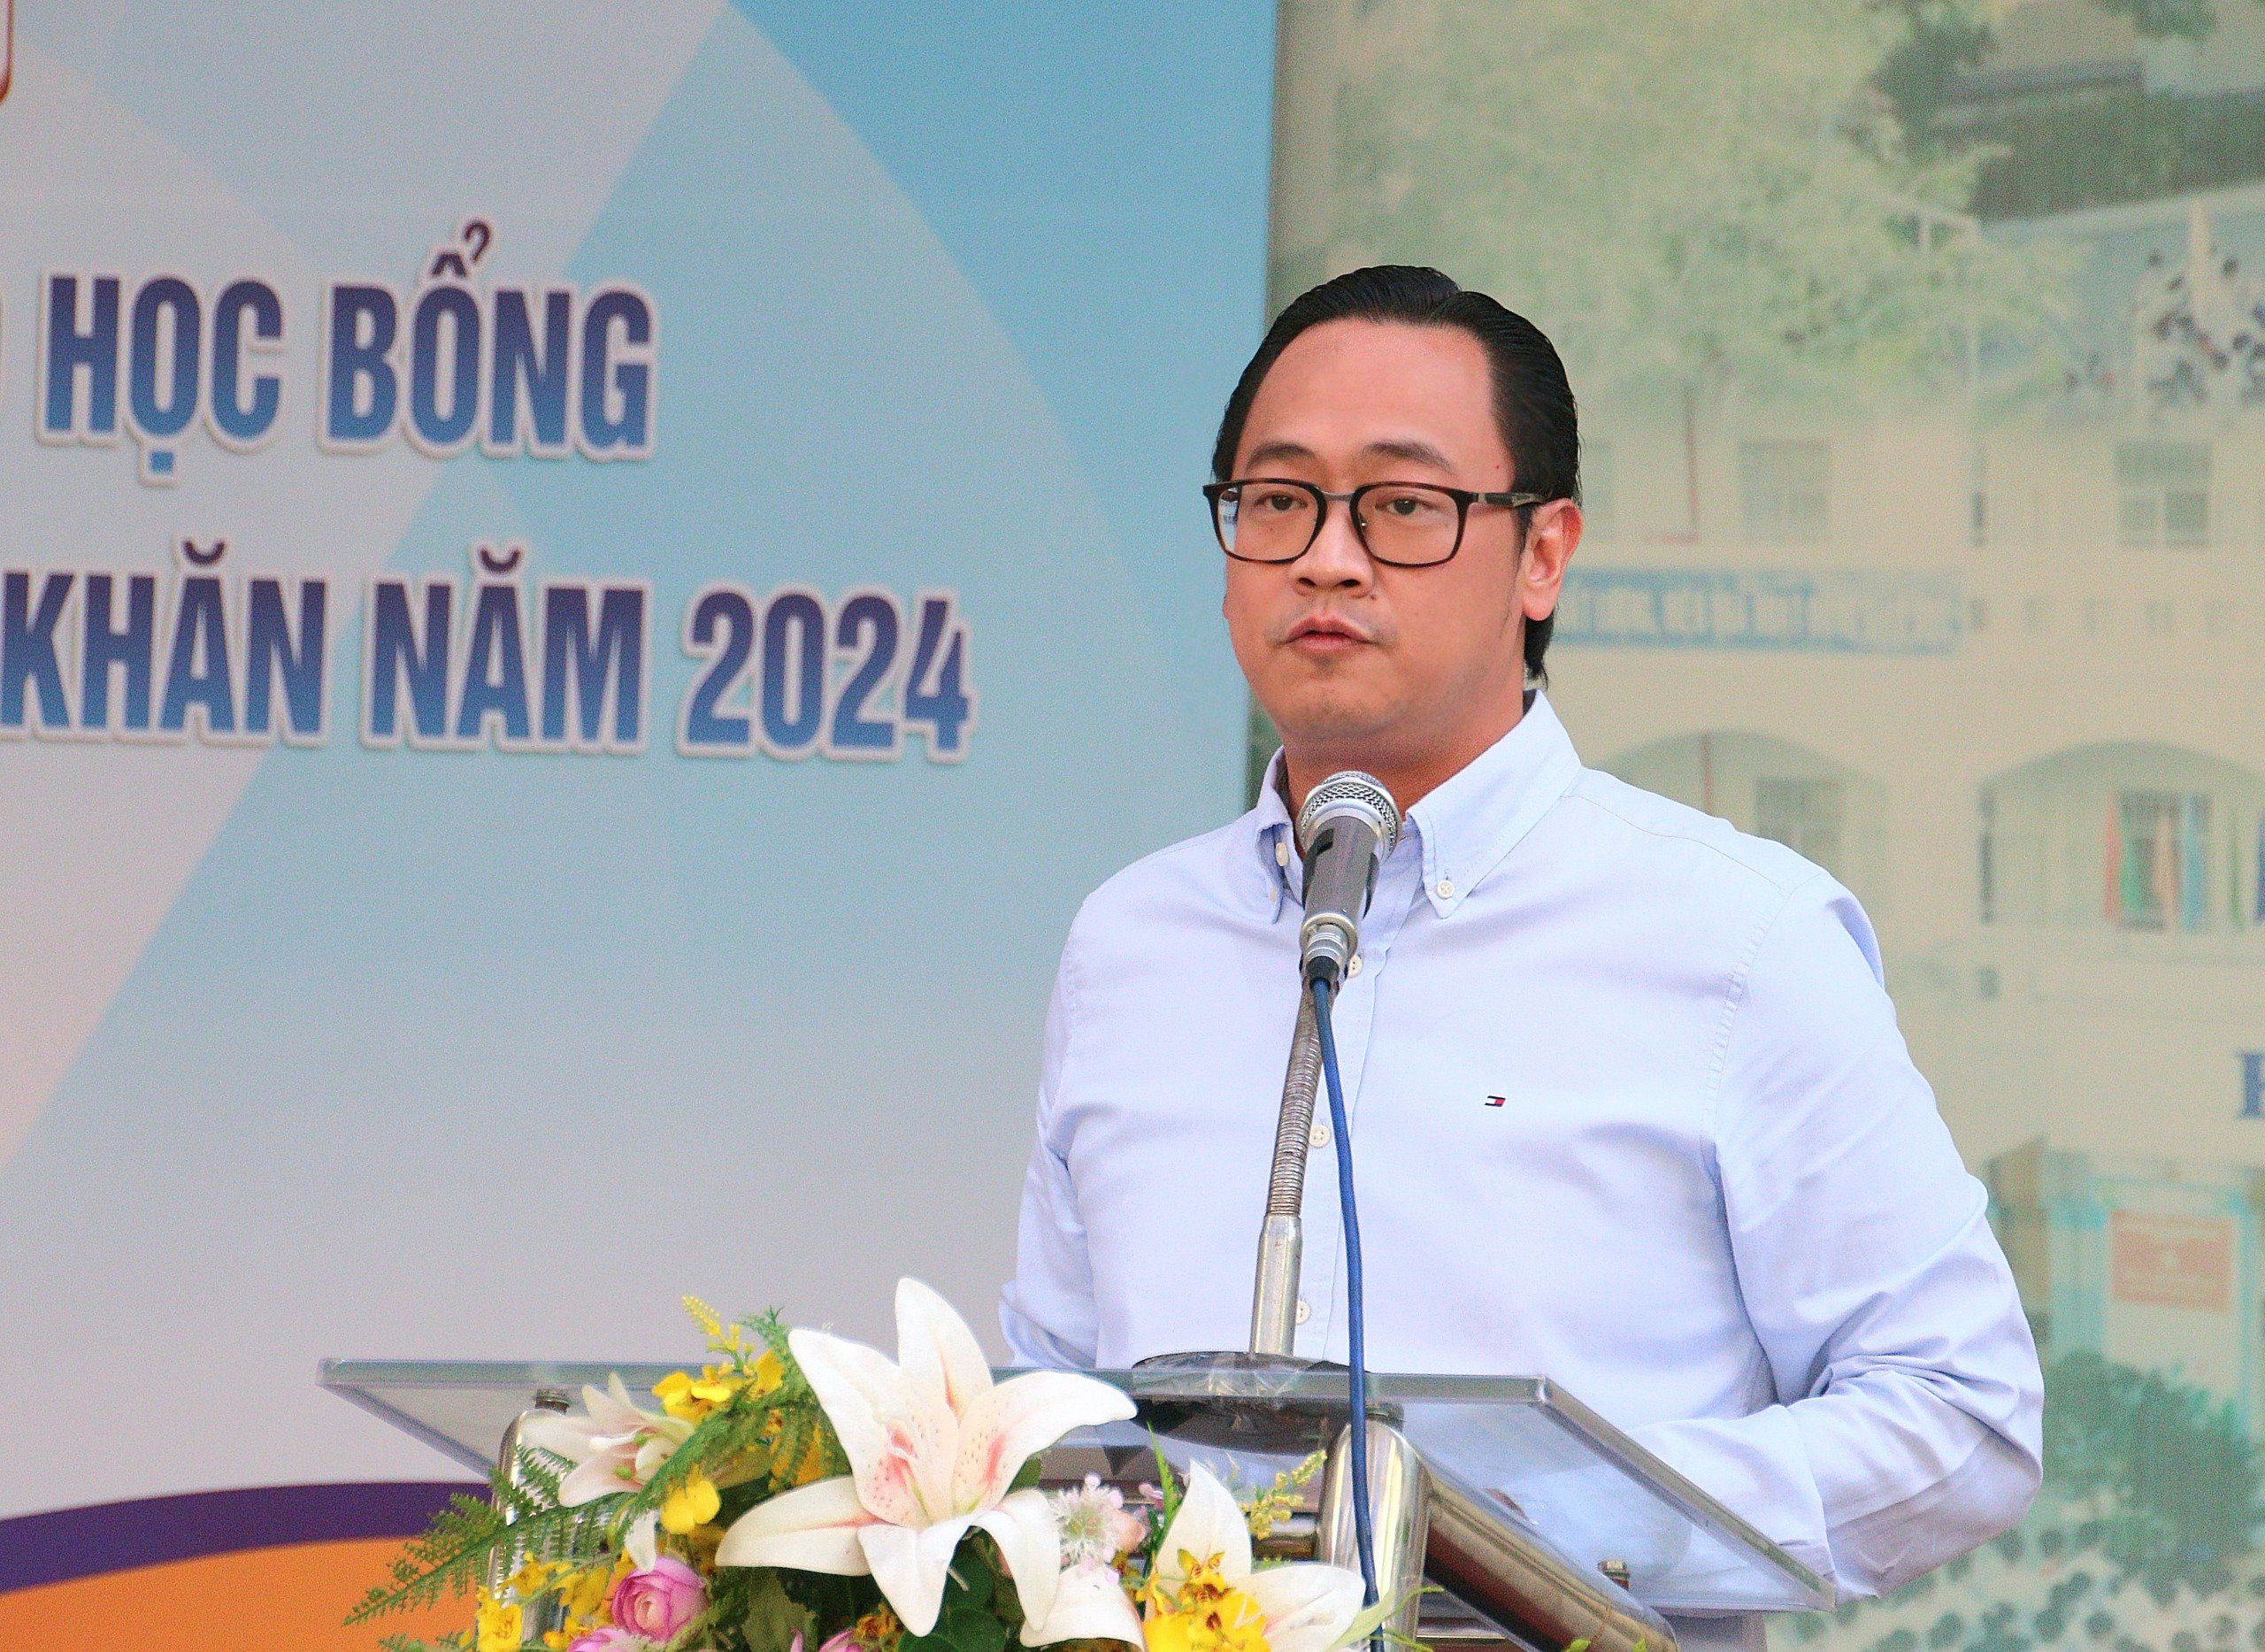 TS. BS CKII Phan Minh Hoàng - Chủ tịch Hội thầy thuốc trẻ TP. Hồ Chí Minh phát biểu tại chương trình.